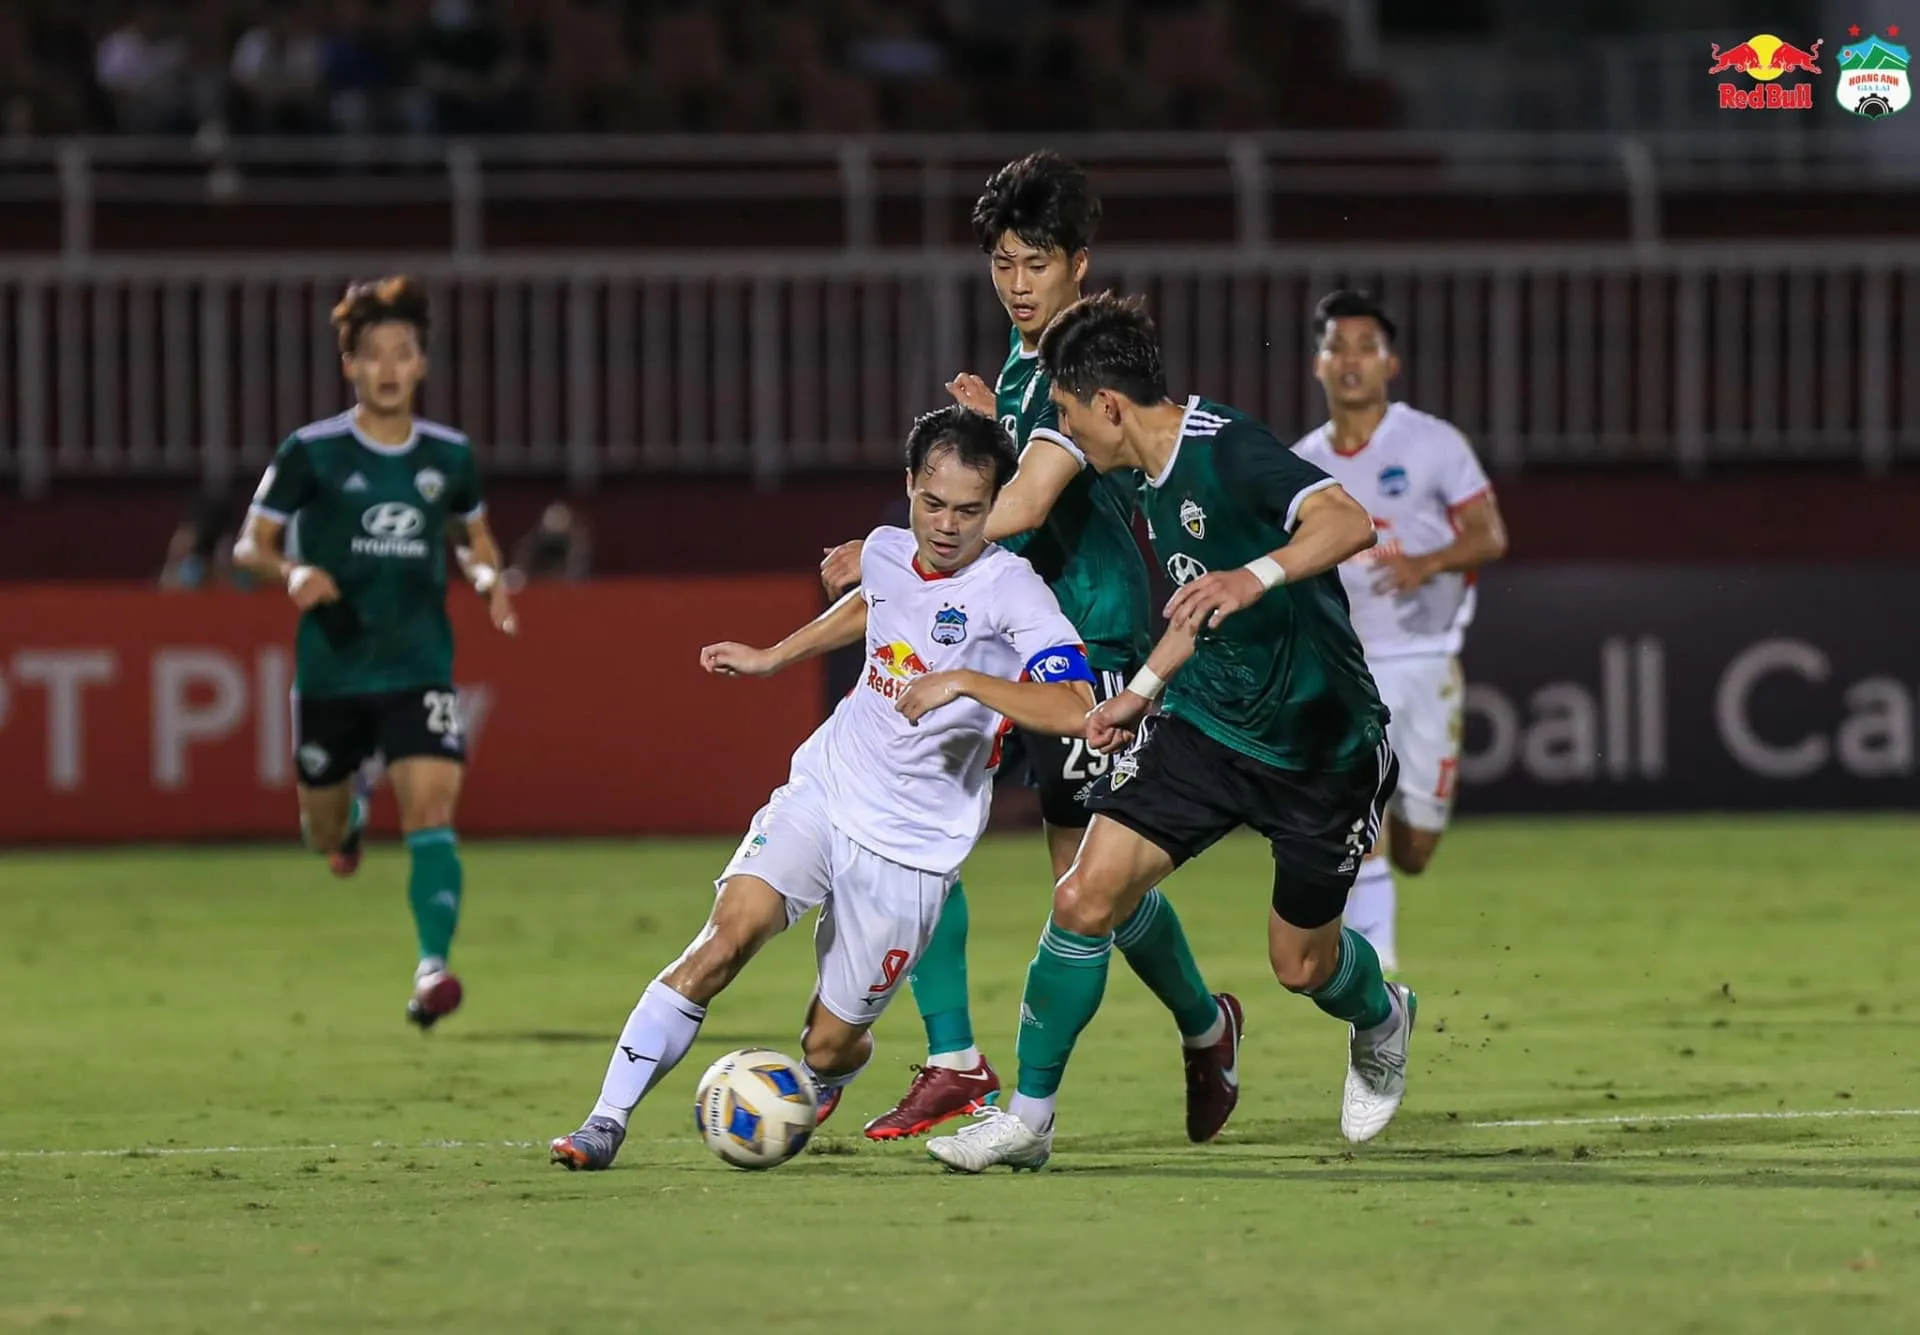 CLB Thái Lan thua đậm đội của Iniesta - Văn Toàn xuất sắc nhất trận gặp Jeonbuk